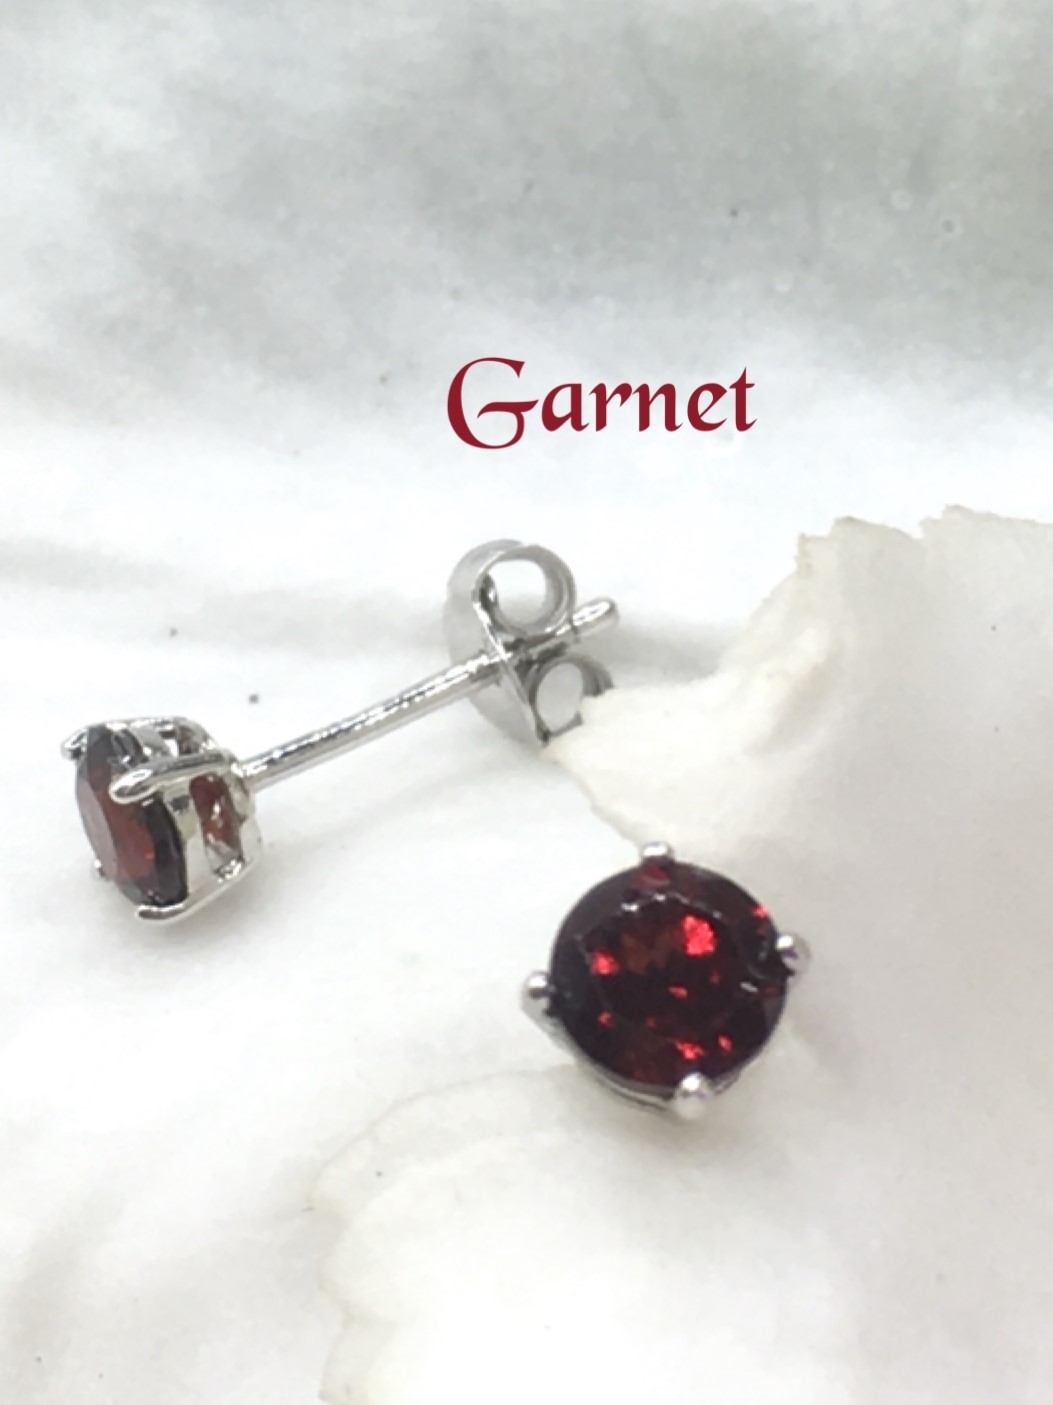 garnet ต่างหู เสริมดวง ปรับธาตุ พลอยโกเมน สีแดง พลอยแท้ เดือนมกราคม การ์เน็ต แหวน พลอย สร้อย แก้ชง ดูดวง เสริมดวง ราศีมกรา